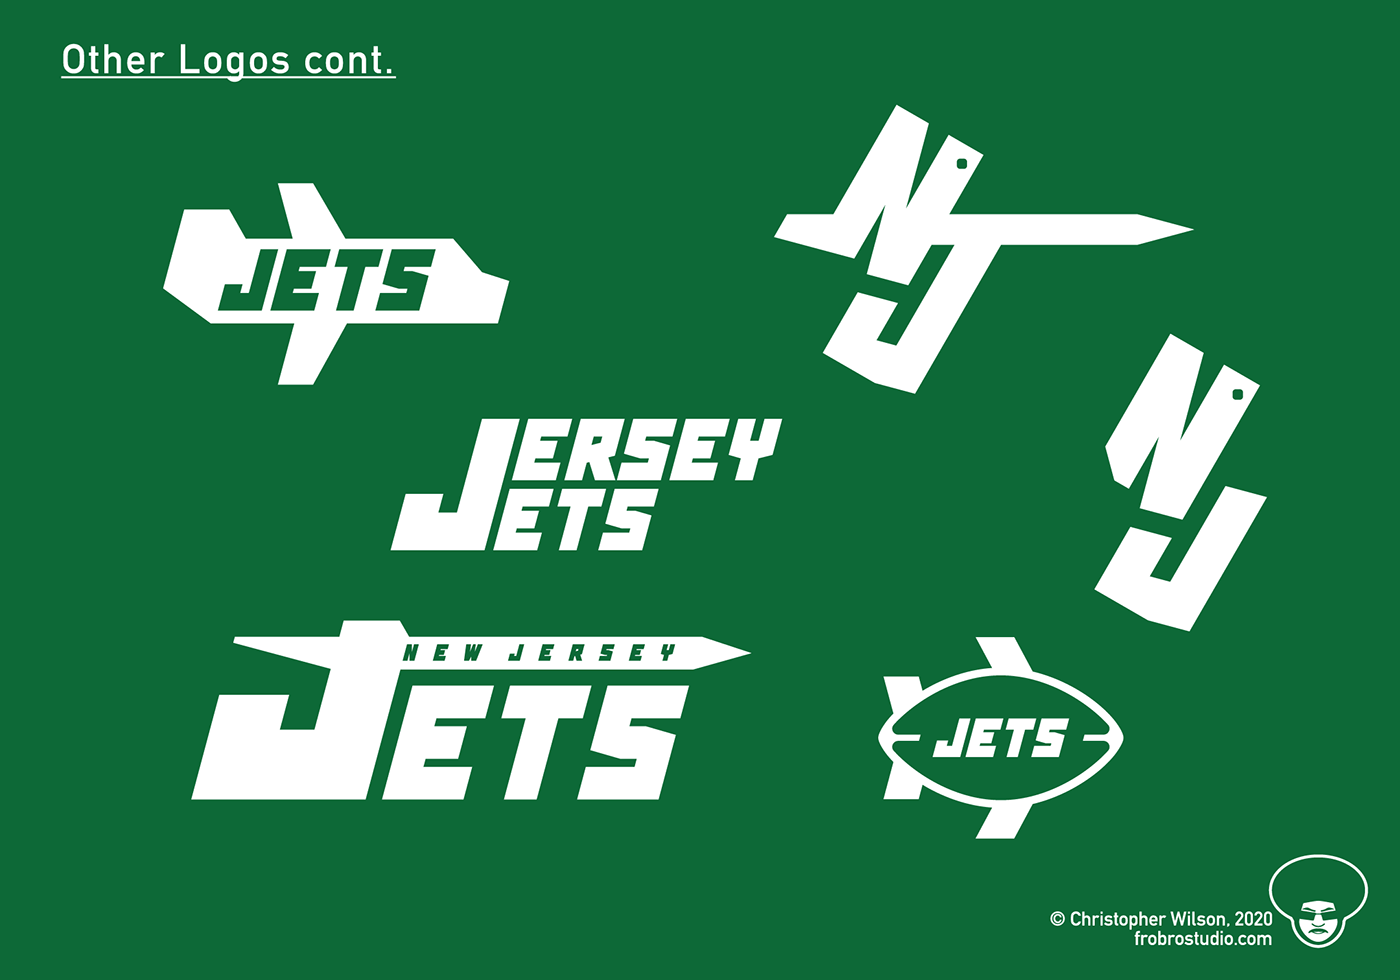 NFL Teams Redesigns & Tweaks - Page 2 - Concepts - Chris Creamer's ...